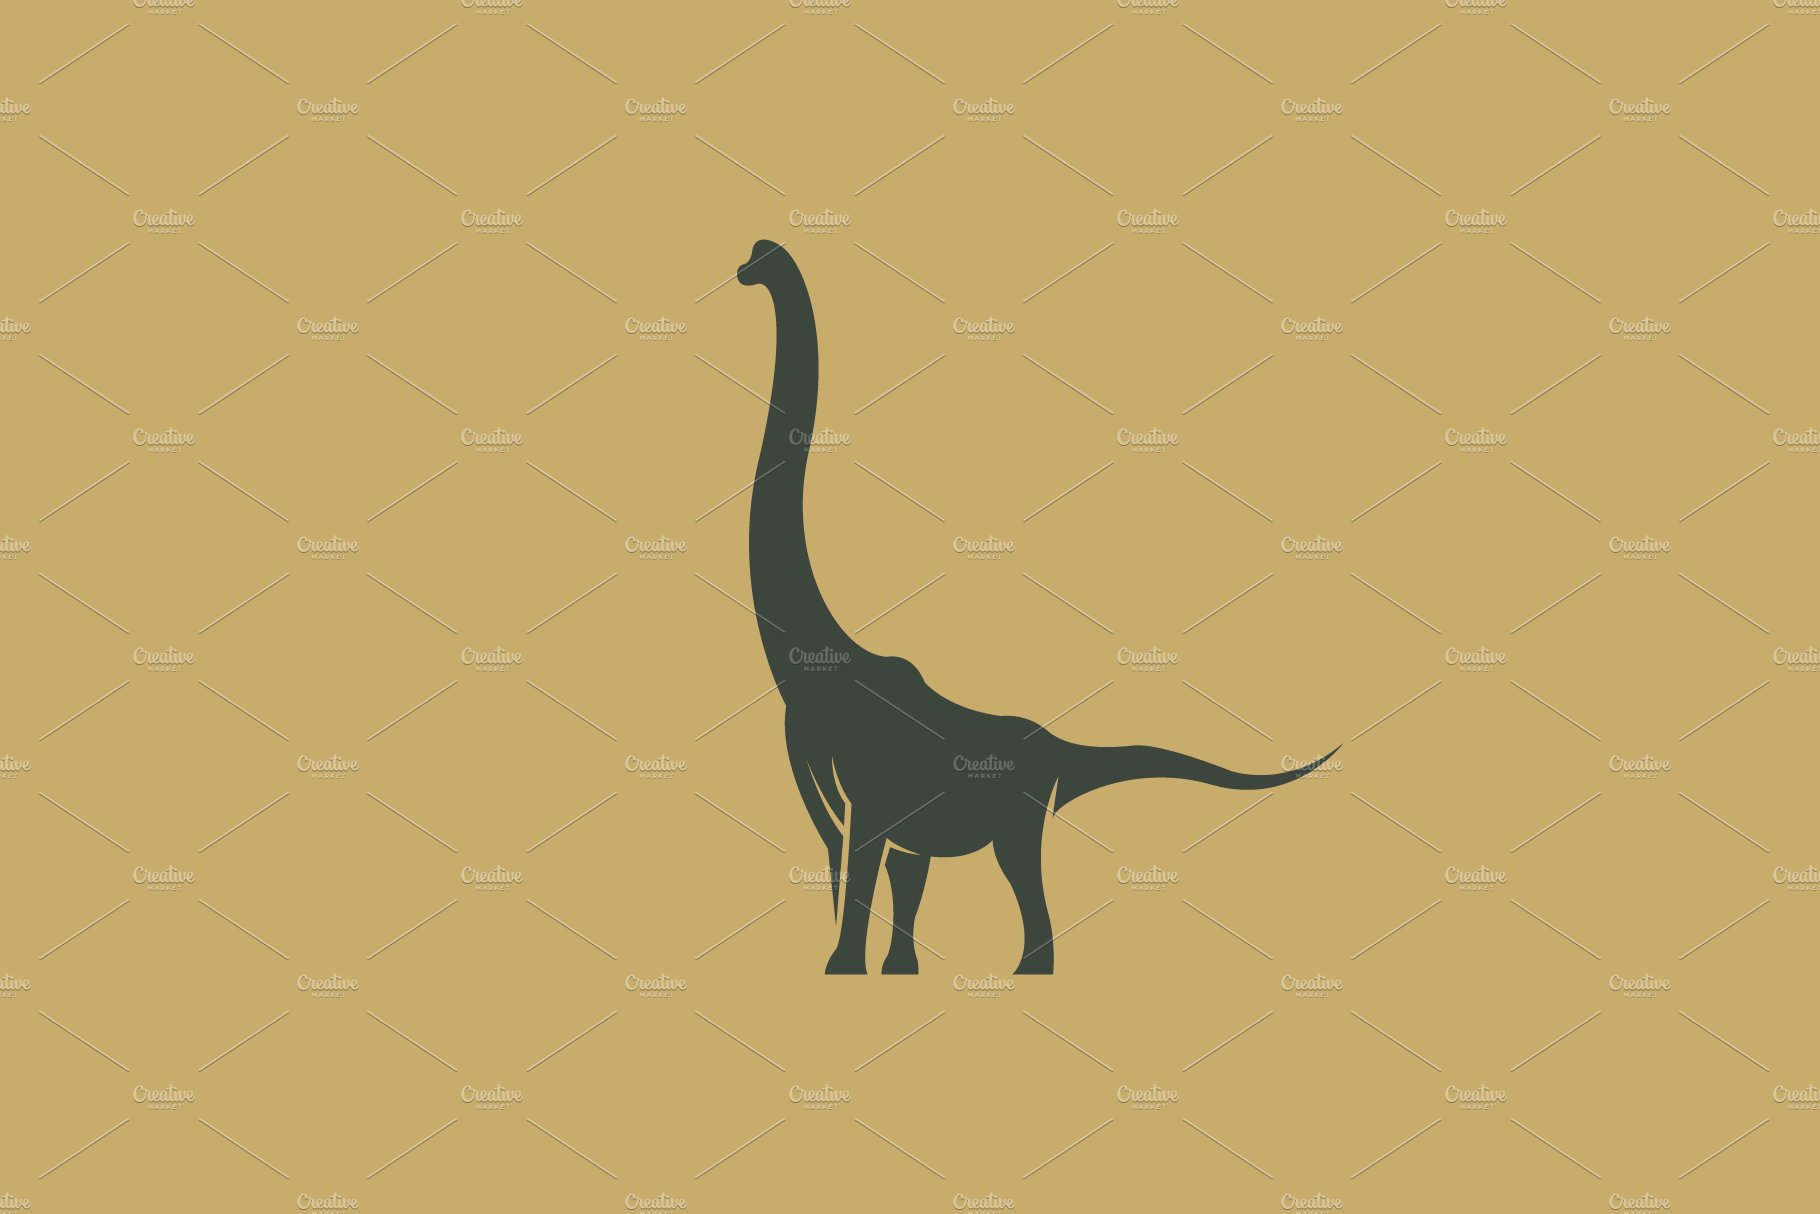 Brachiosaurus Logo cover image.